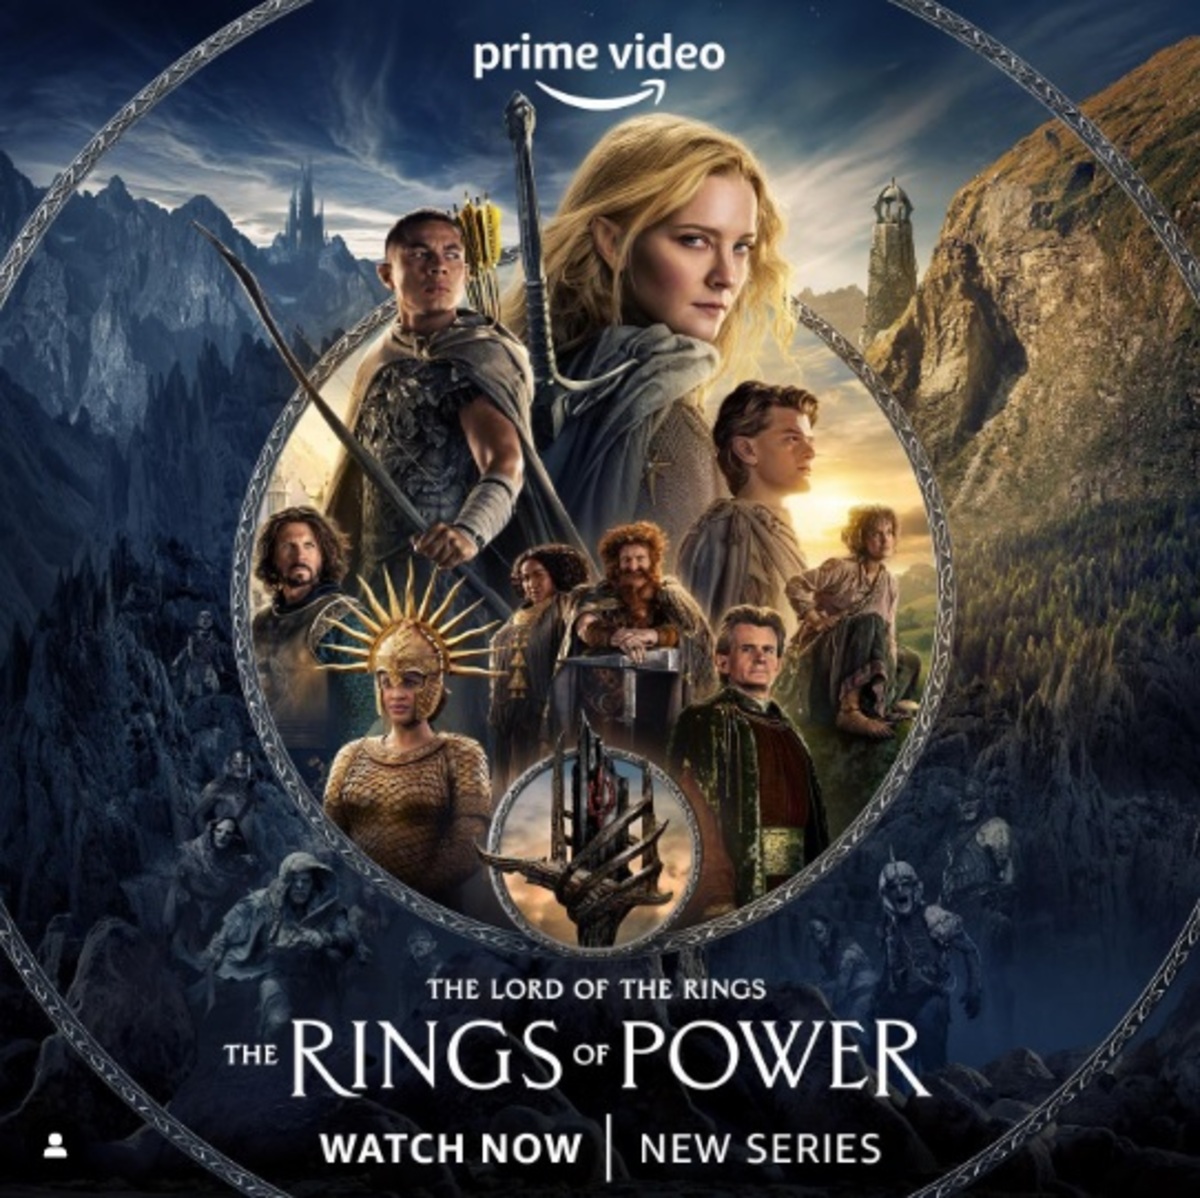 Il Signore degli Anelli serie TV: trama, cast, uscita e streaming